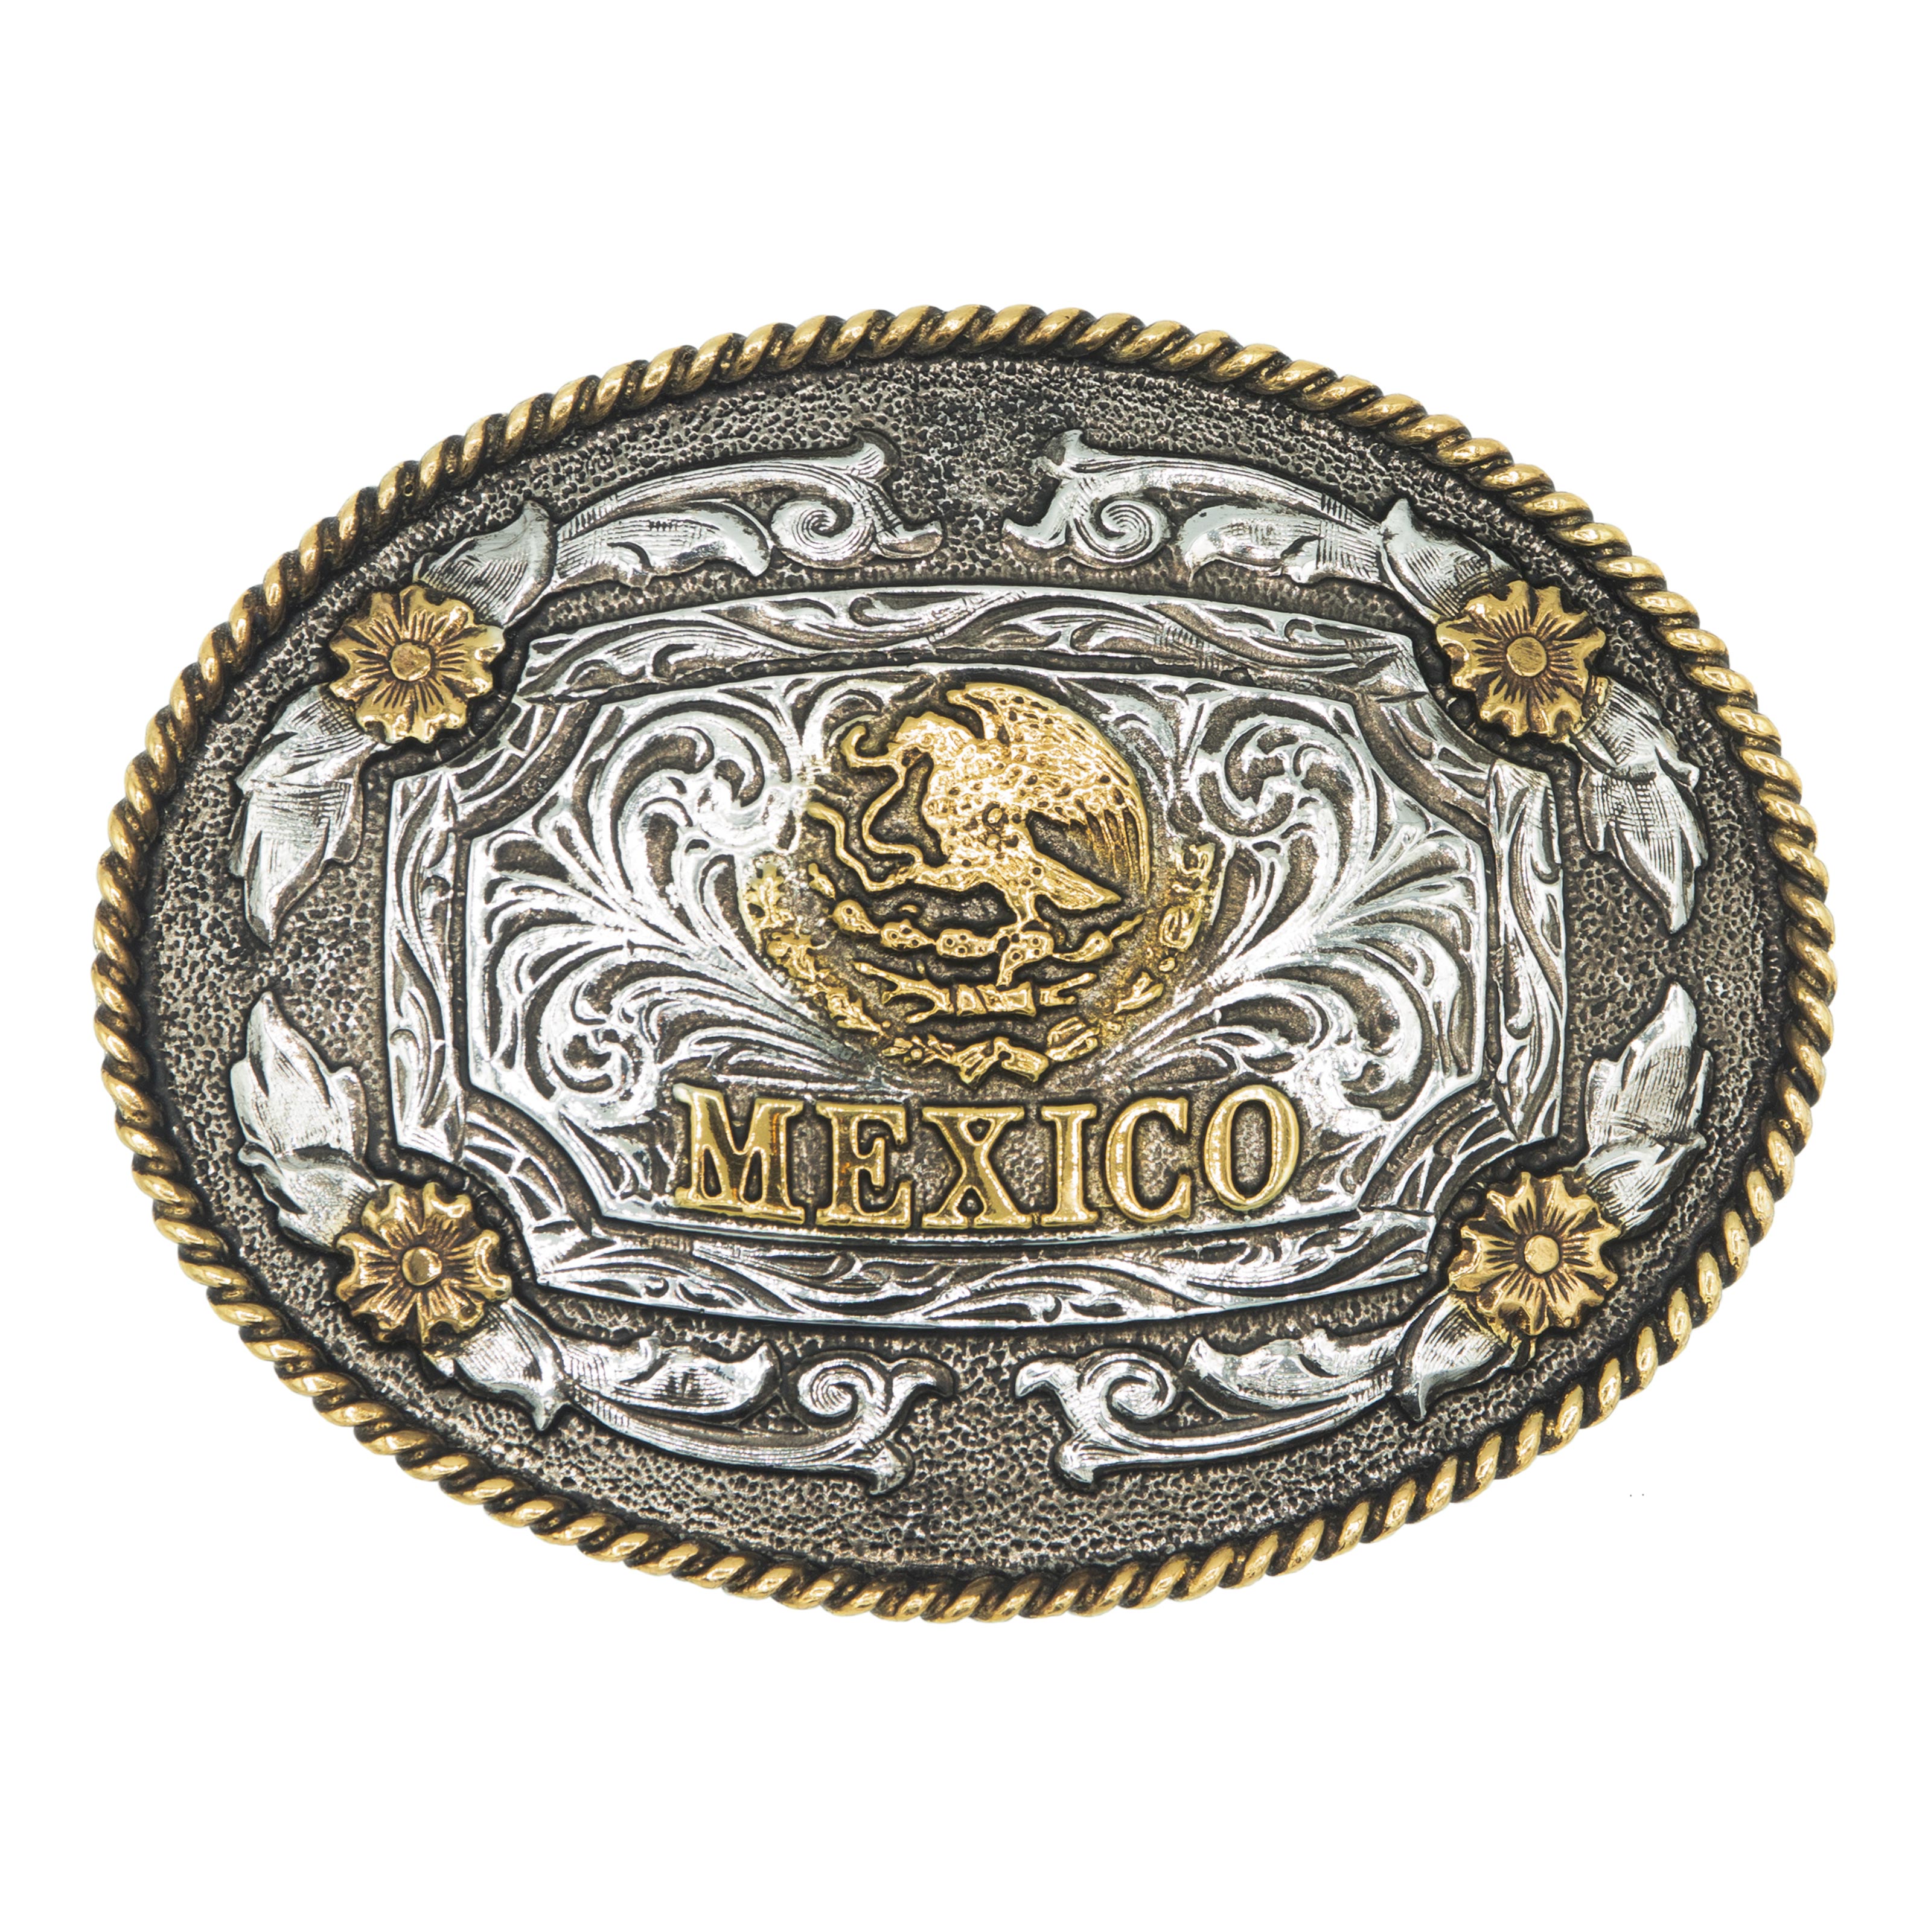 Hecho en Mexico Belt Buckle Brass Metal Eagle Bronze New Cowboy Vaquero  Mexican 